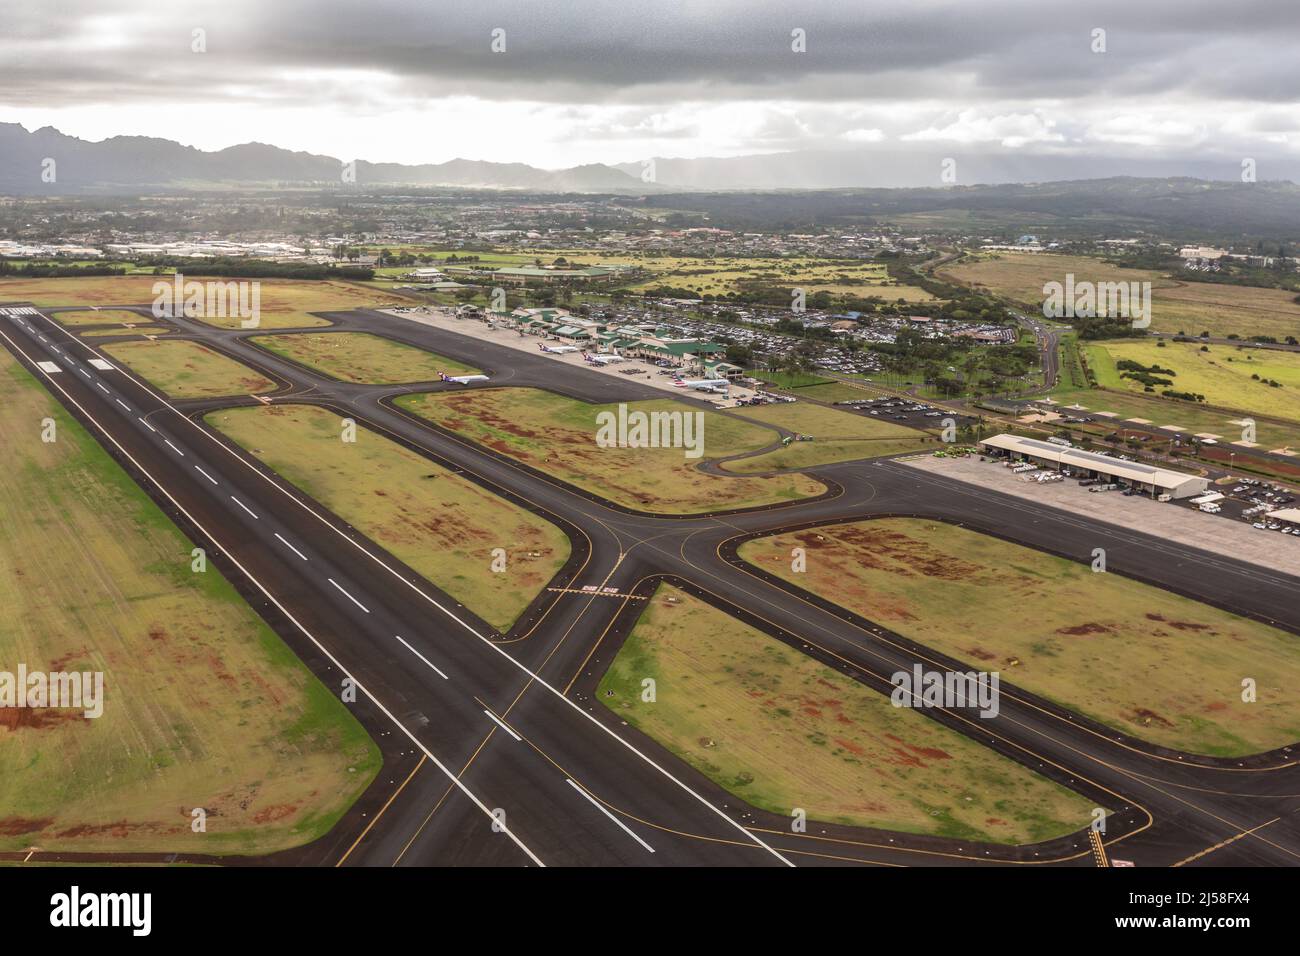 L'aeroporto di Lihue serve l'isola di Kauai, Hawaii, con il suo servizio aereo commerciale. Da questo aeroporto partono anche voli panoramici in elicottero. Foto Stock